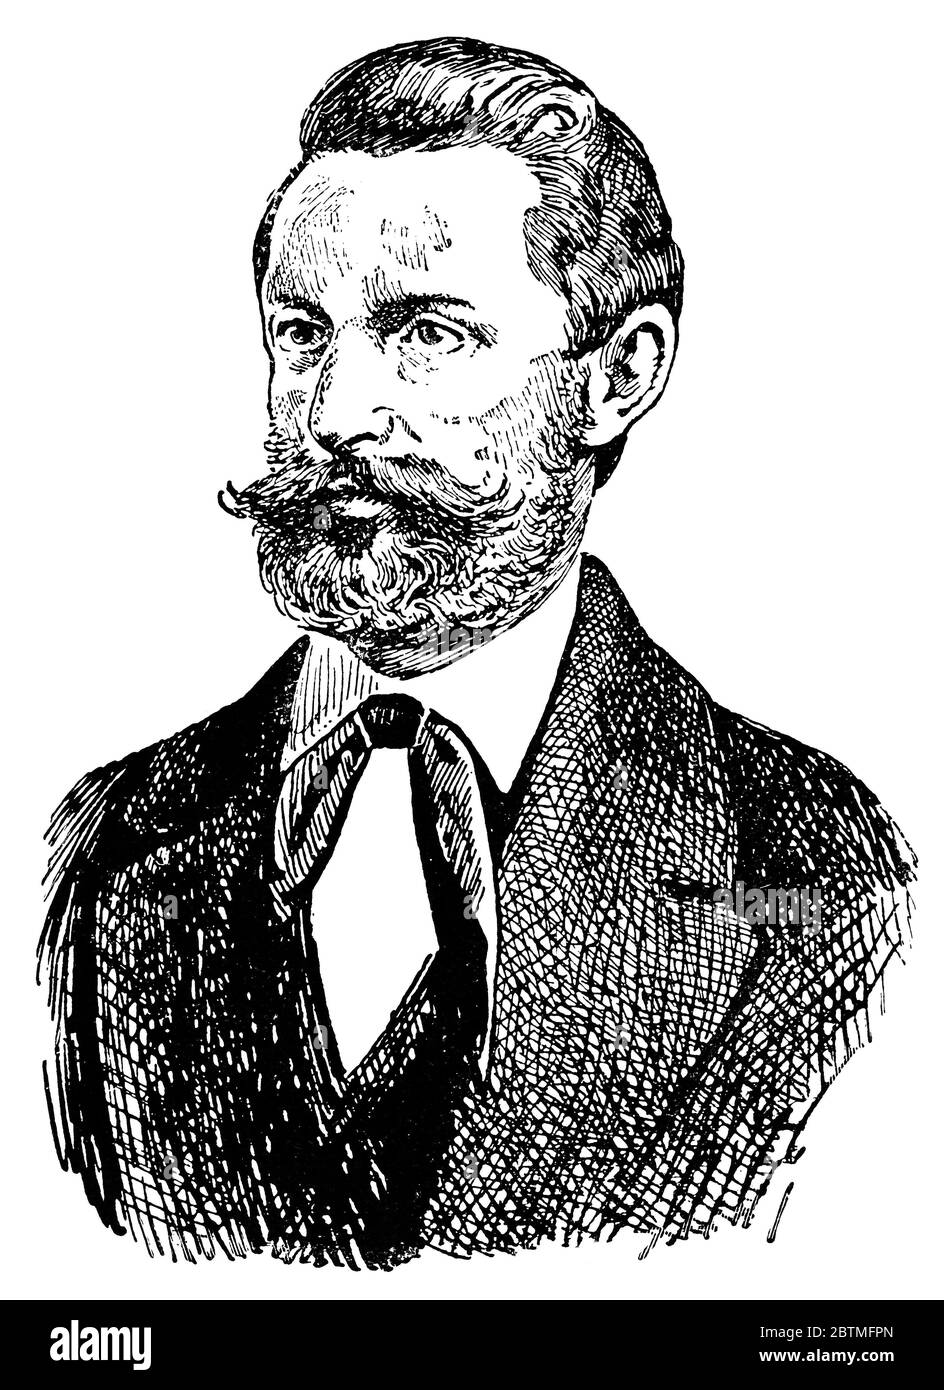 Porträt von Ludwig Leichhardt, war ein deutscher Forscher und Naturforscher, vor allem für seine Erforschung von Nord-und Zentralaustralien bekannt. Stockfoto